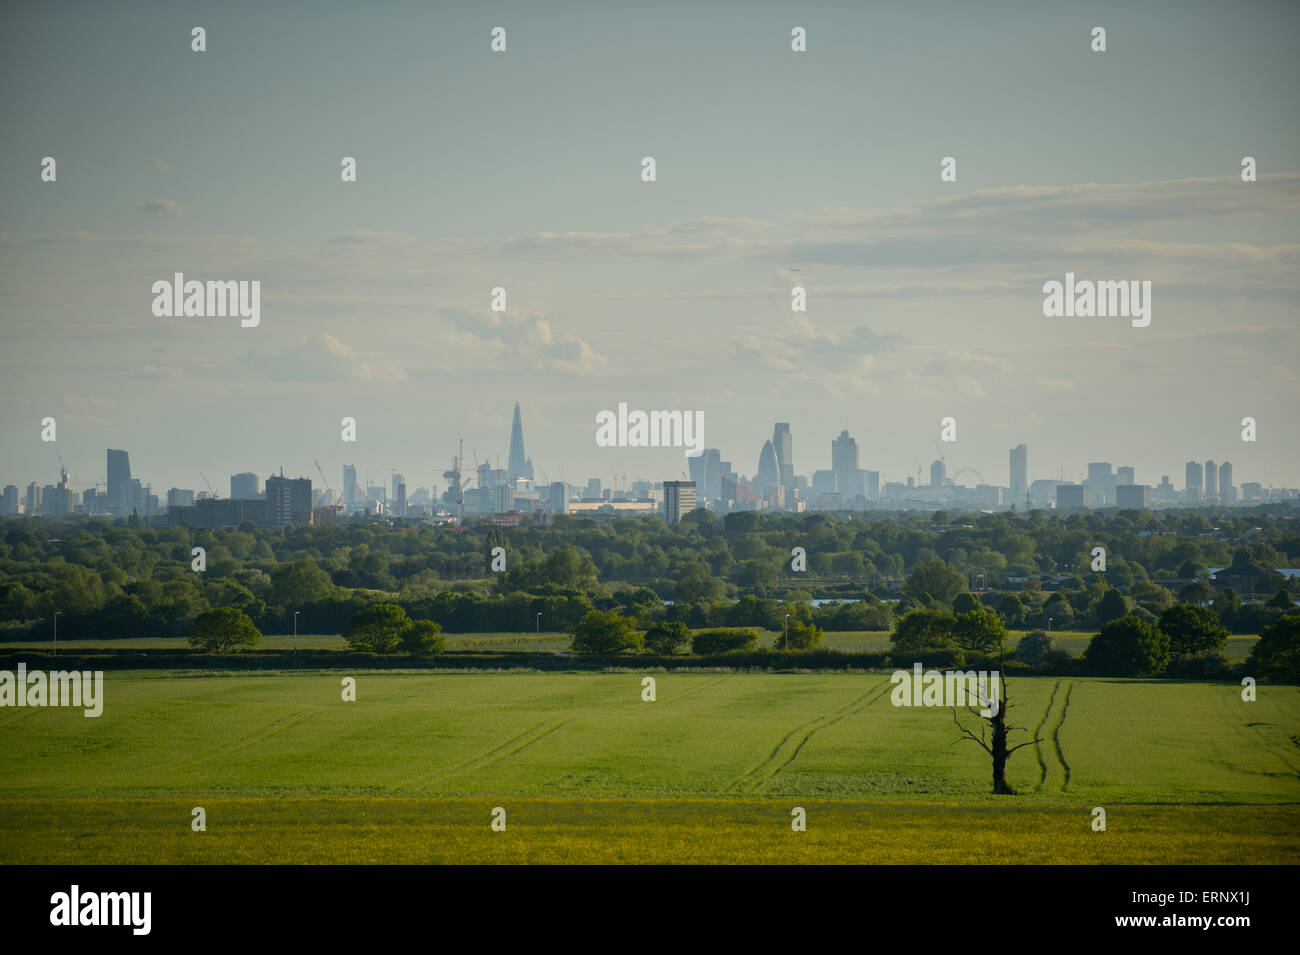 El skyline londinense de Hainaut, Essex mostrando el Shard, Torre 42, 30 St Mary Axe (el pepinillo), 20 de Fenchurch Street. Foto de stock